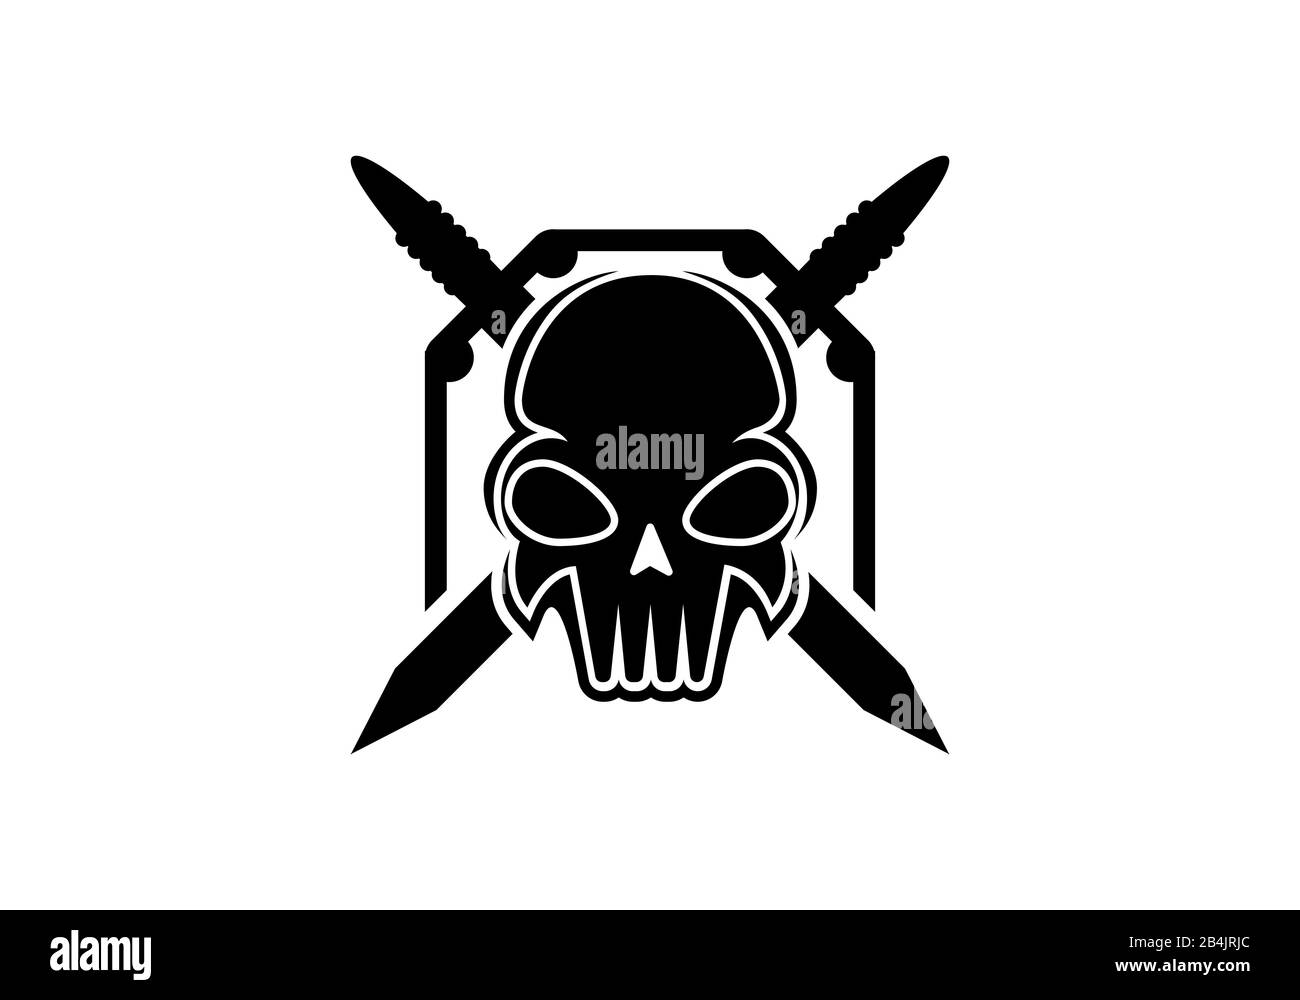 Skull Warrior logo design template black on white background Stock Vector